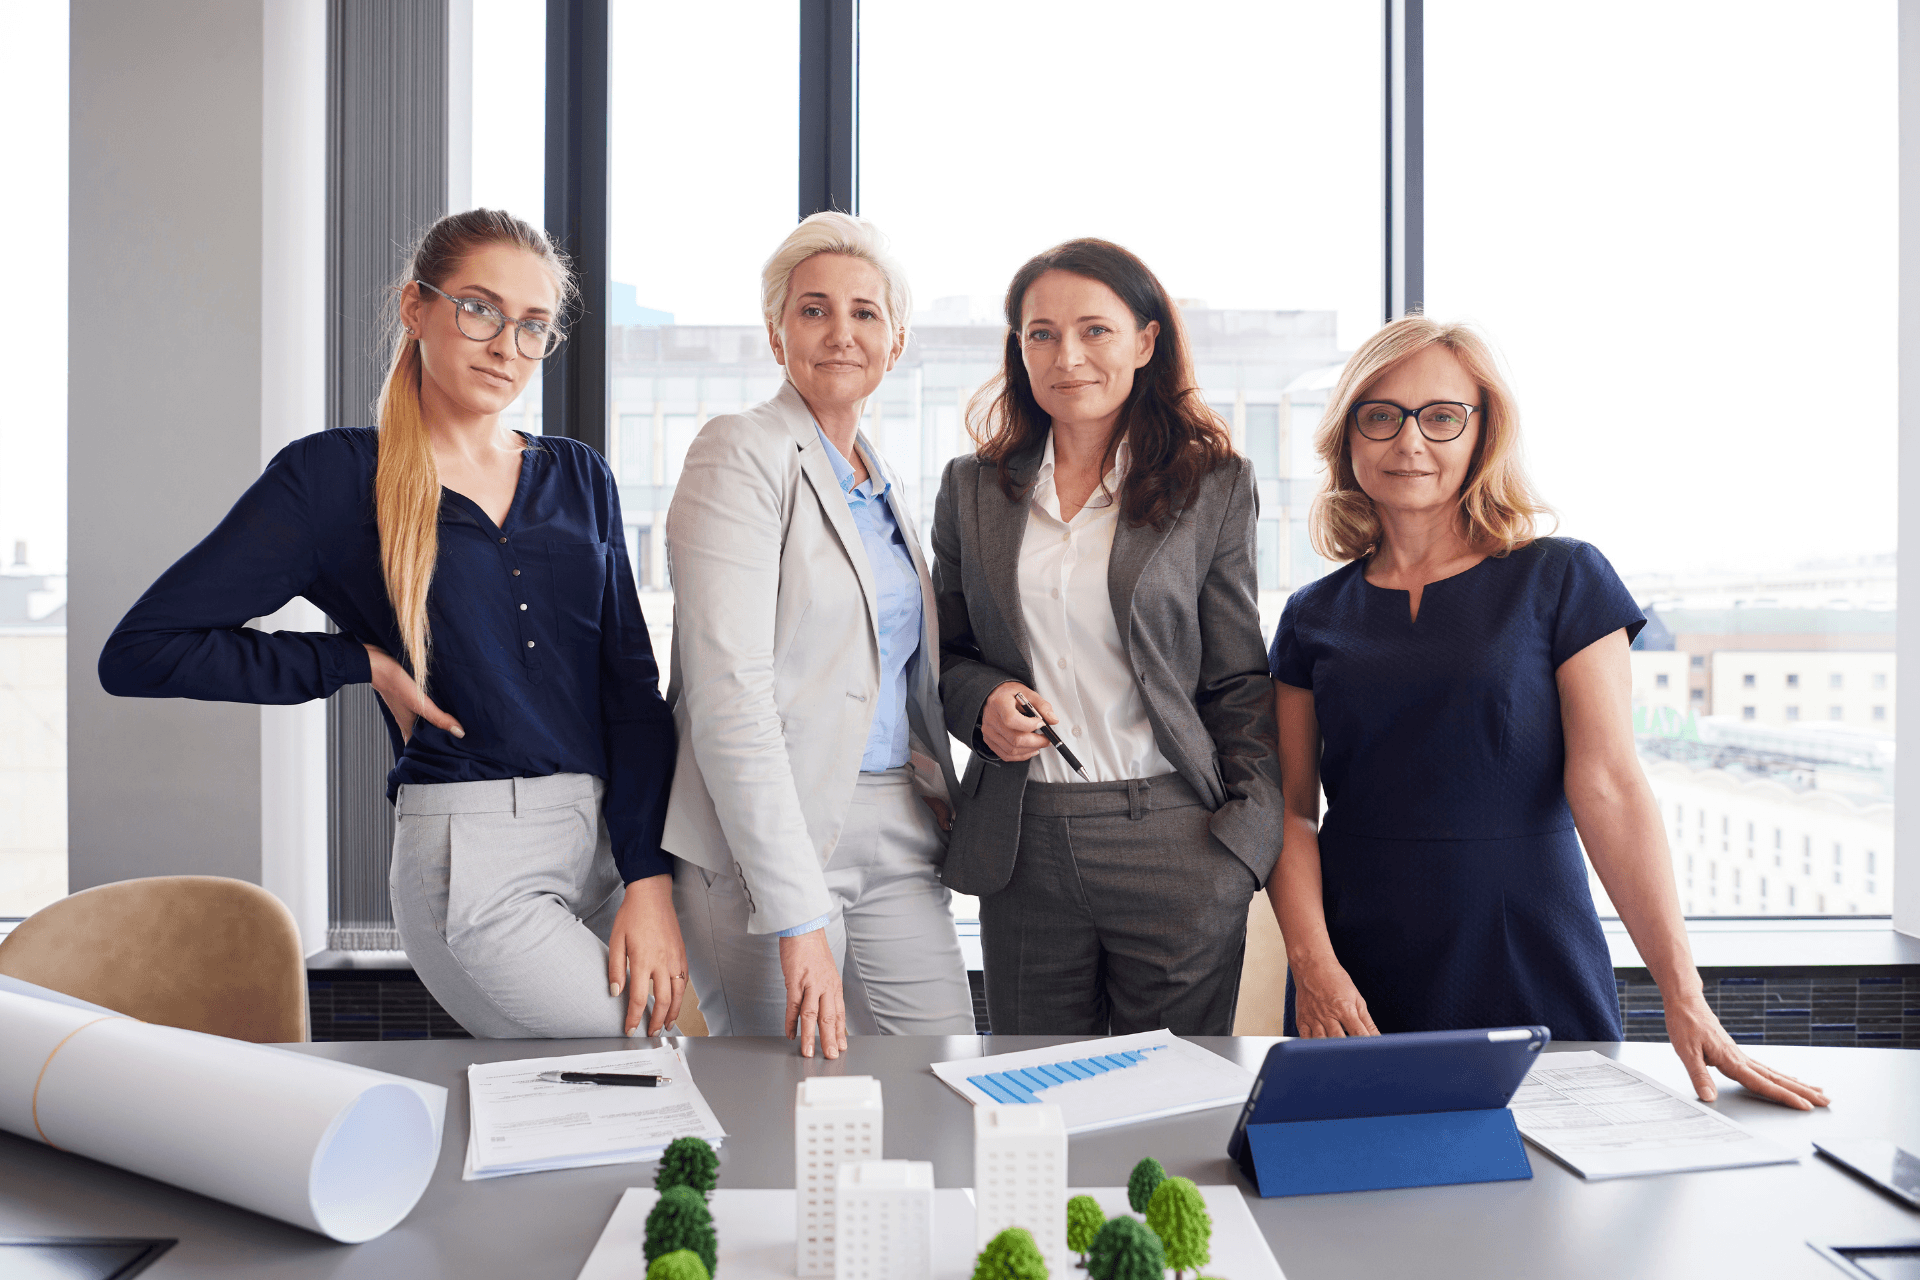 women in business